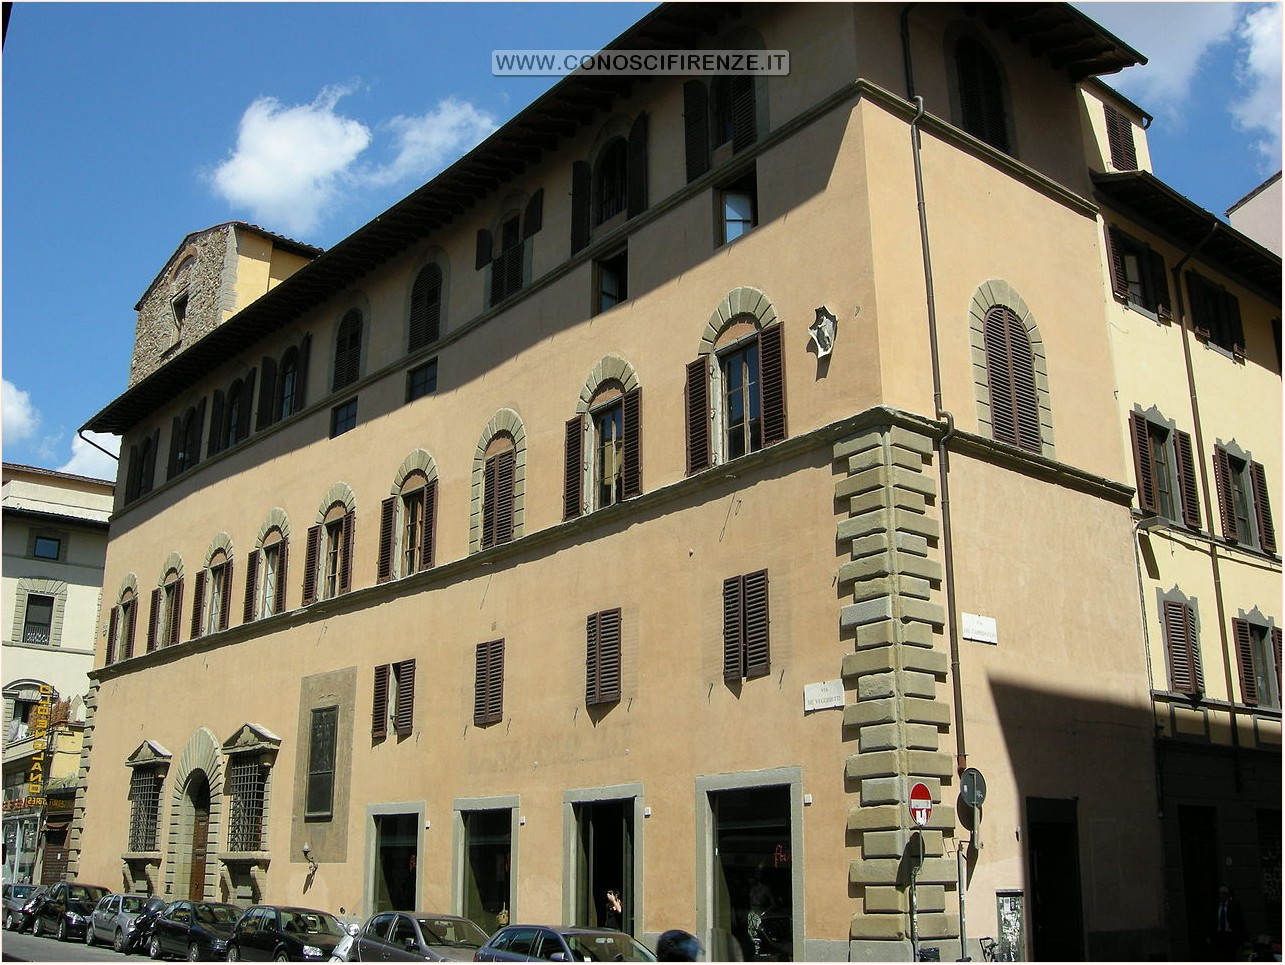 Palazzo Ricci Altoviti